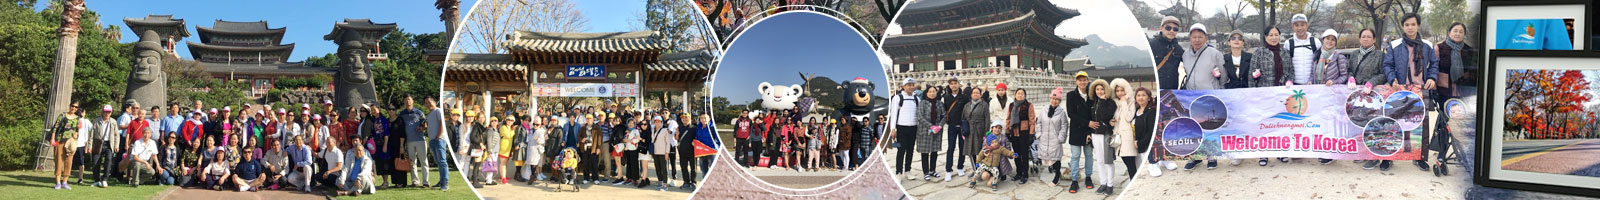 Tour du lịch Nước Ngoài từ 10-20 Triệu: Nhật, Hàn, Hồng Kông